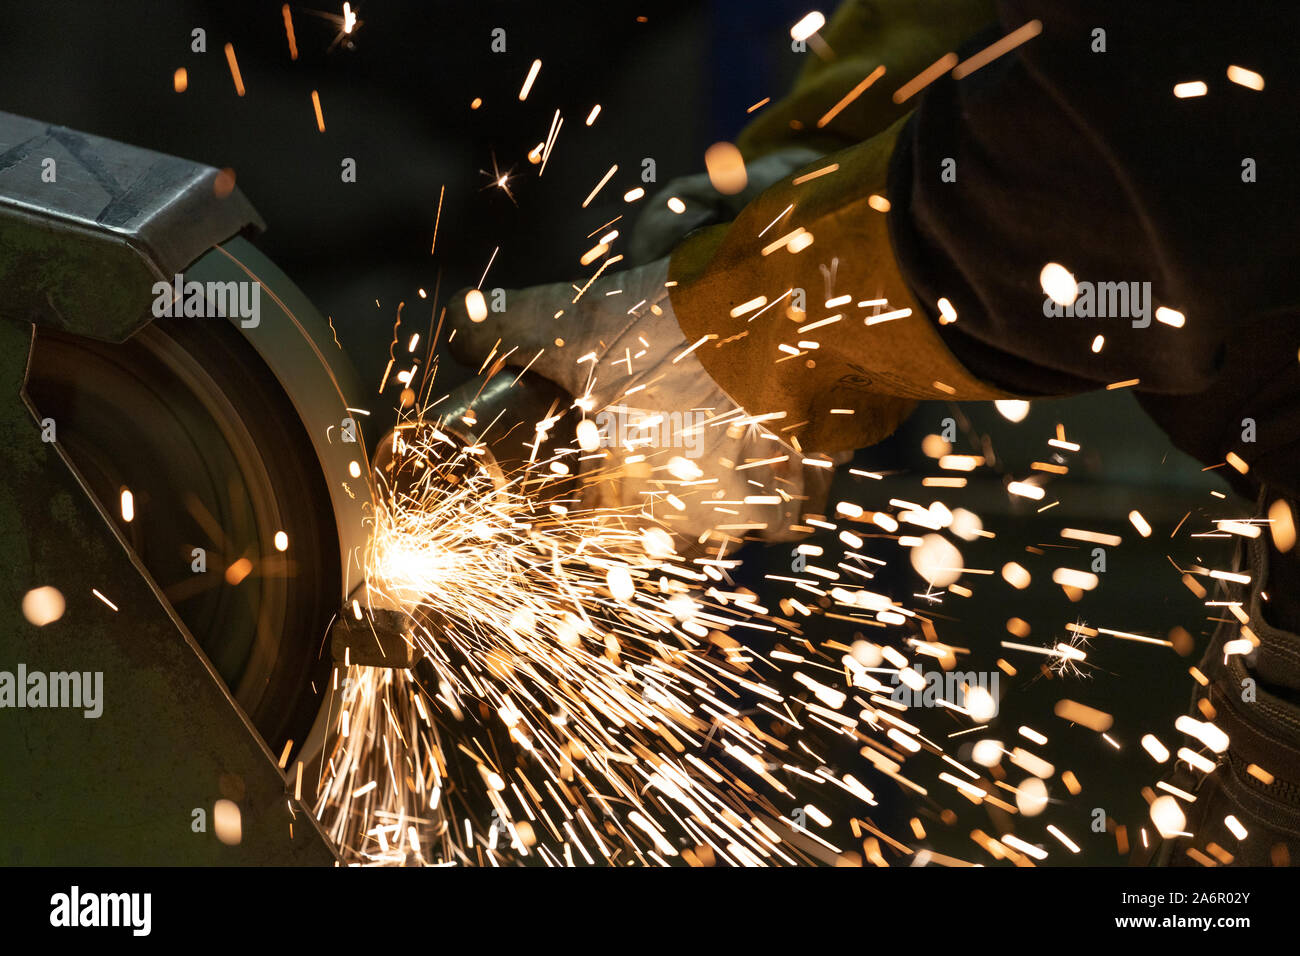 Hersteller von Fertigung arbeiten - die industrielle Fertigung arbeiten, Stahl Metallindustrie Arbeiten. Stockfoto